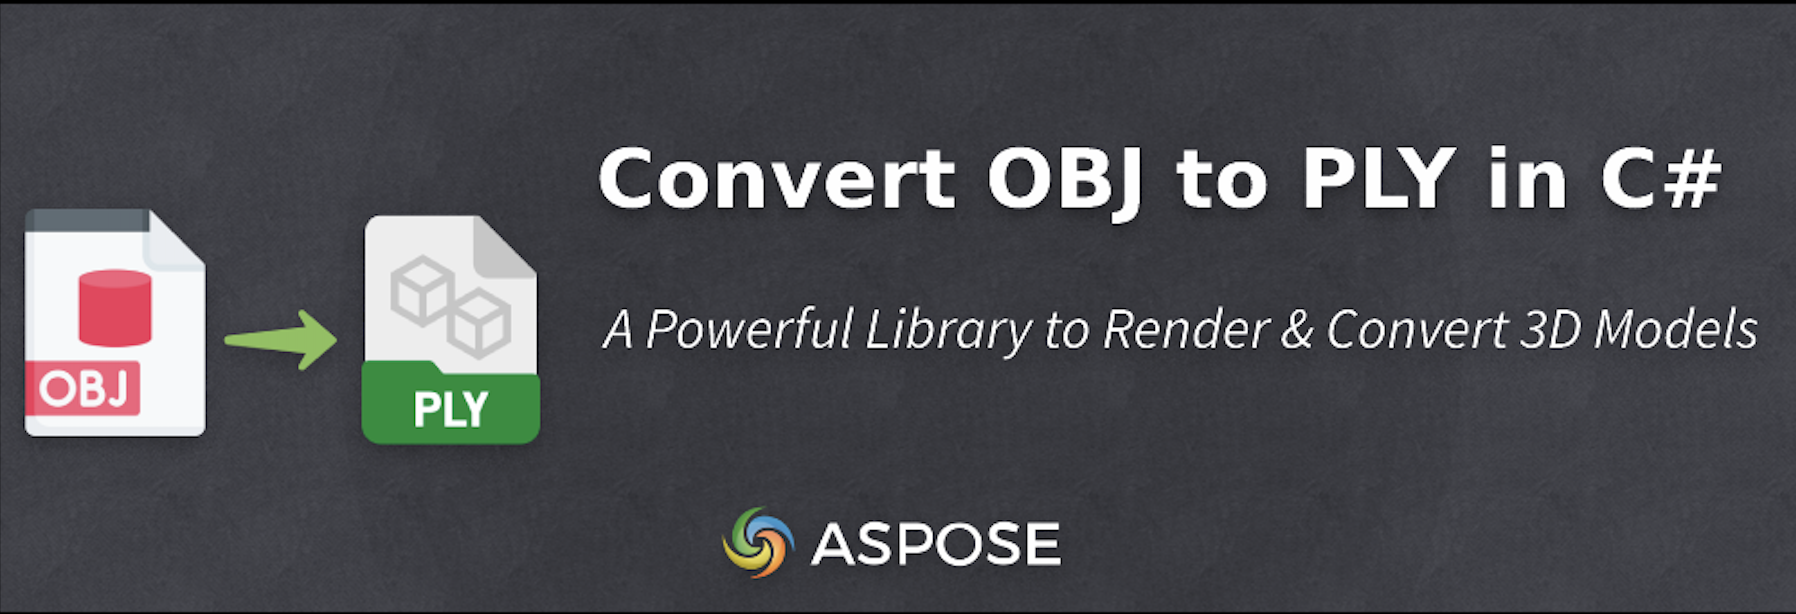 Converti OBJ in PLY in C#